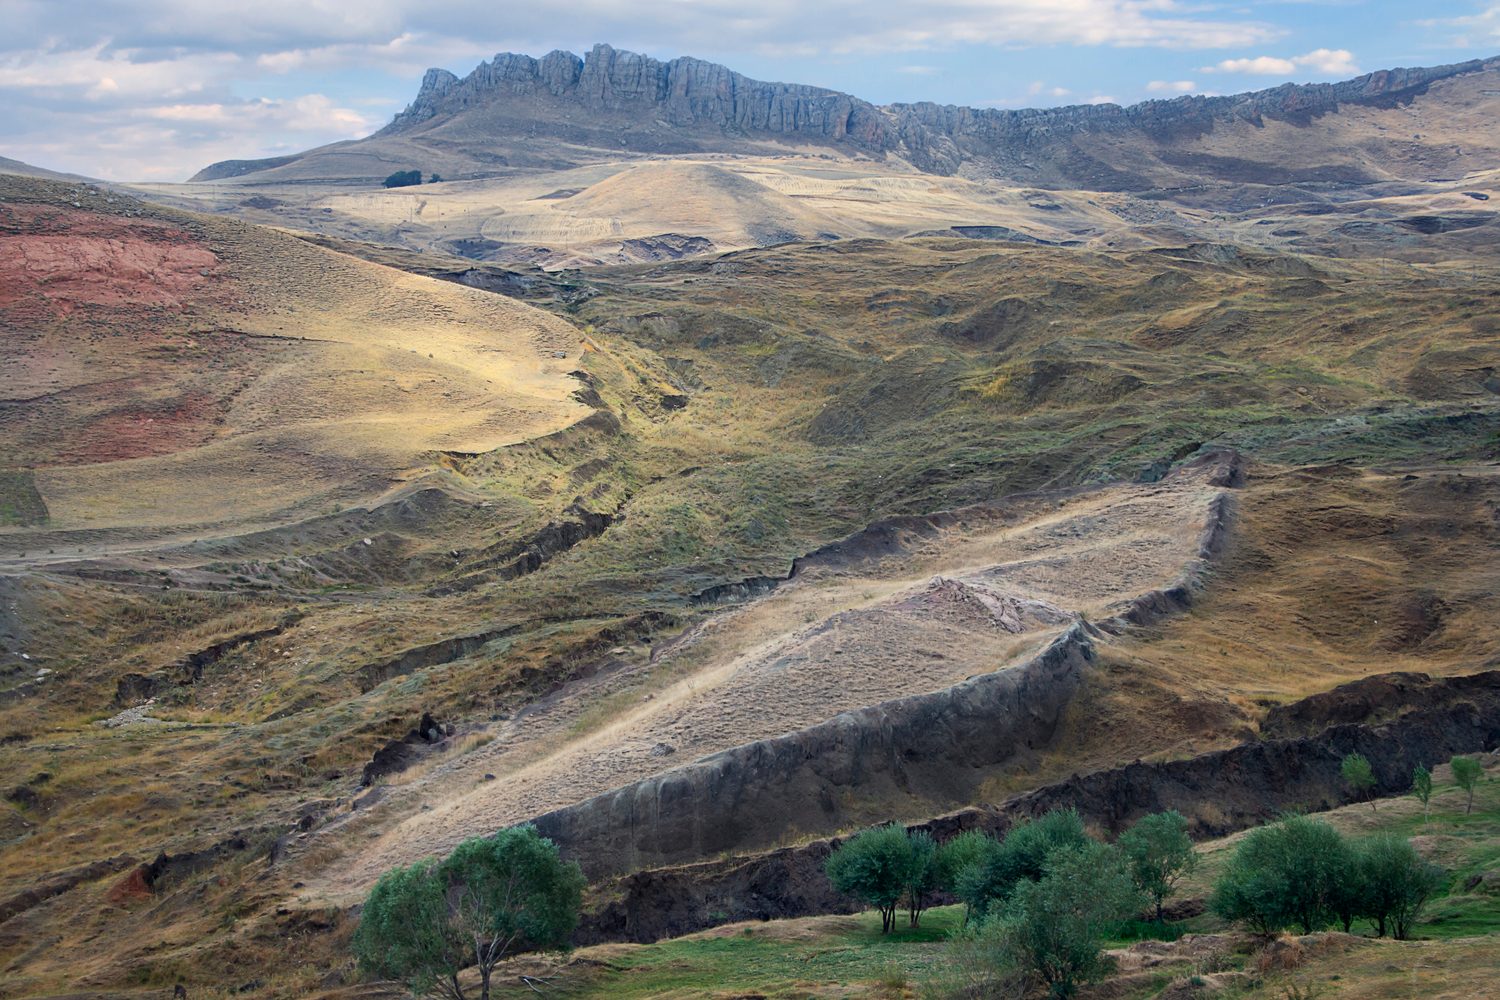 Турецкие исследователи будут работать на горе Арарат, где, как они полагают, находятся останки Ноева ковчега